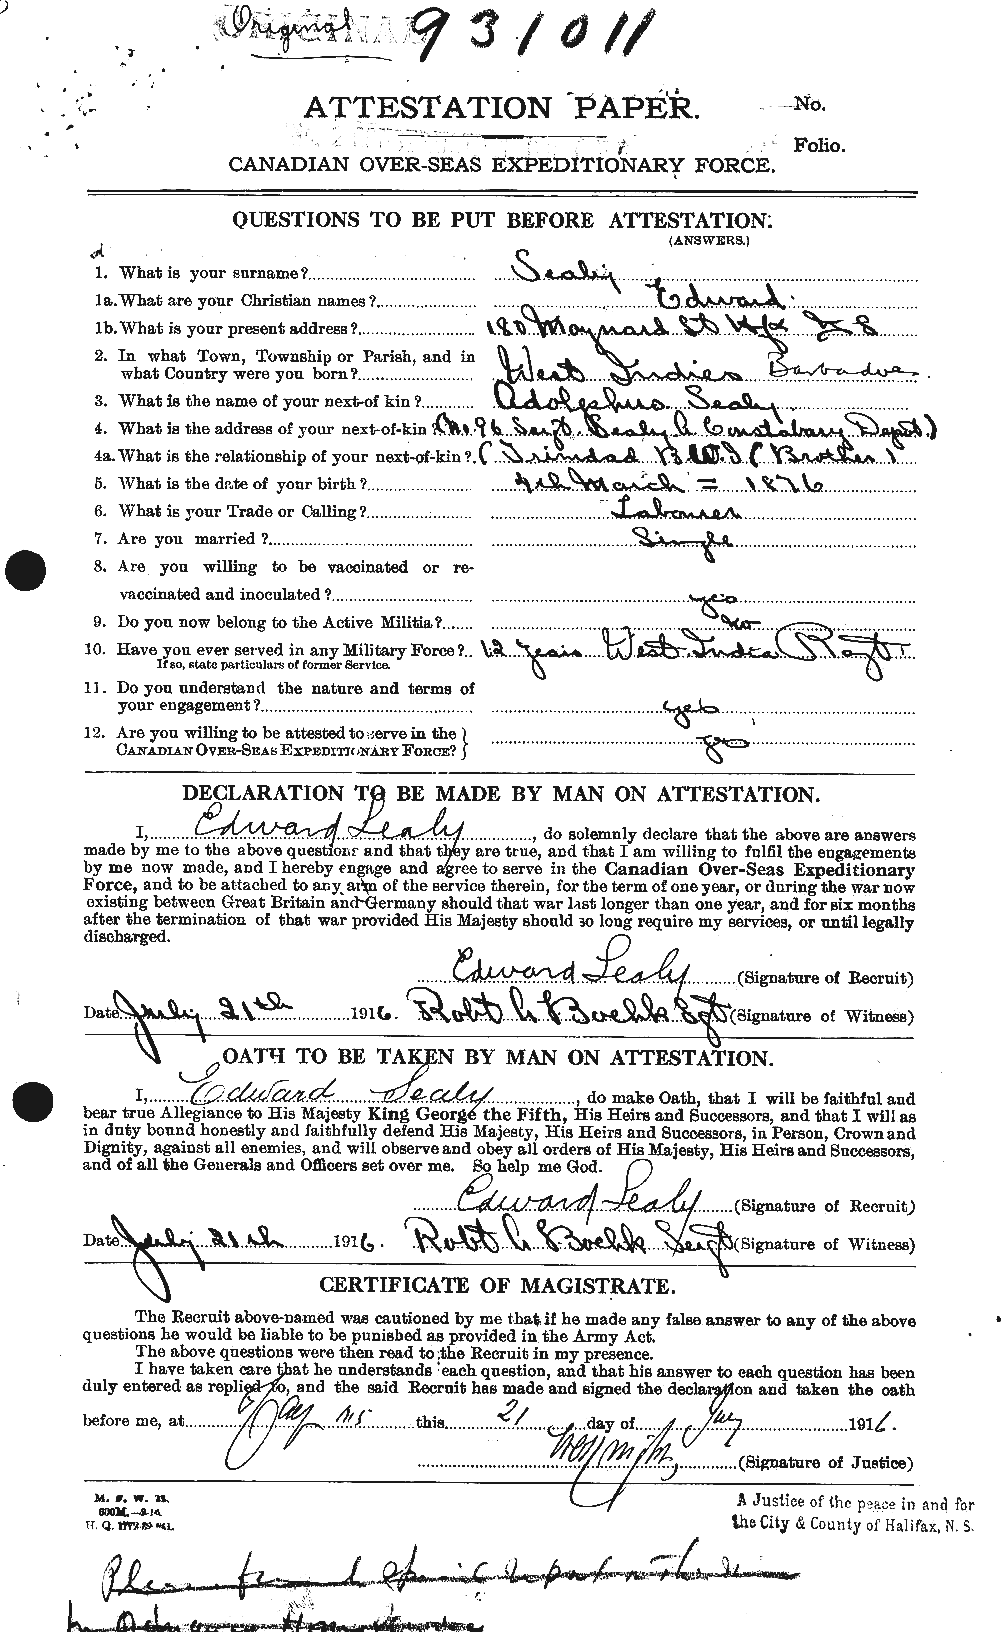 Dossiers du Personnel de la Première Guerre mondiale - CEC 622392a